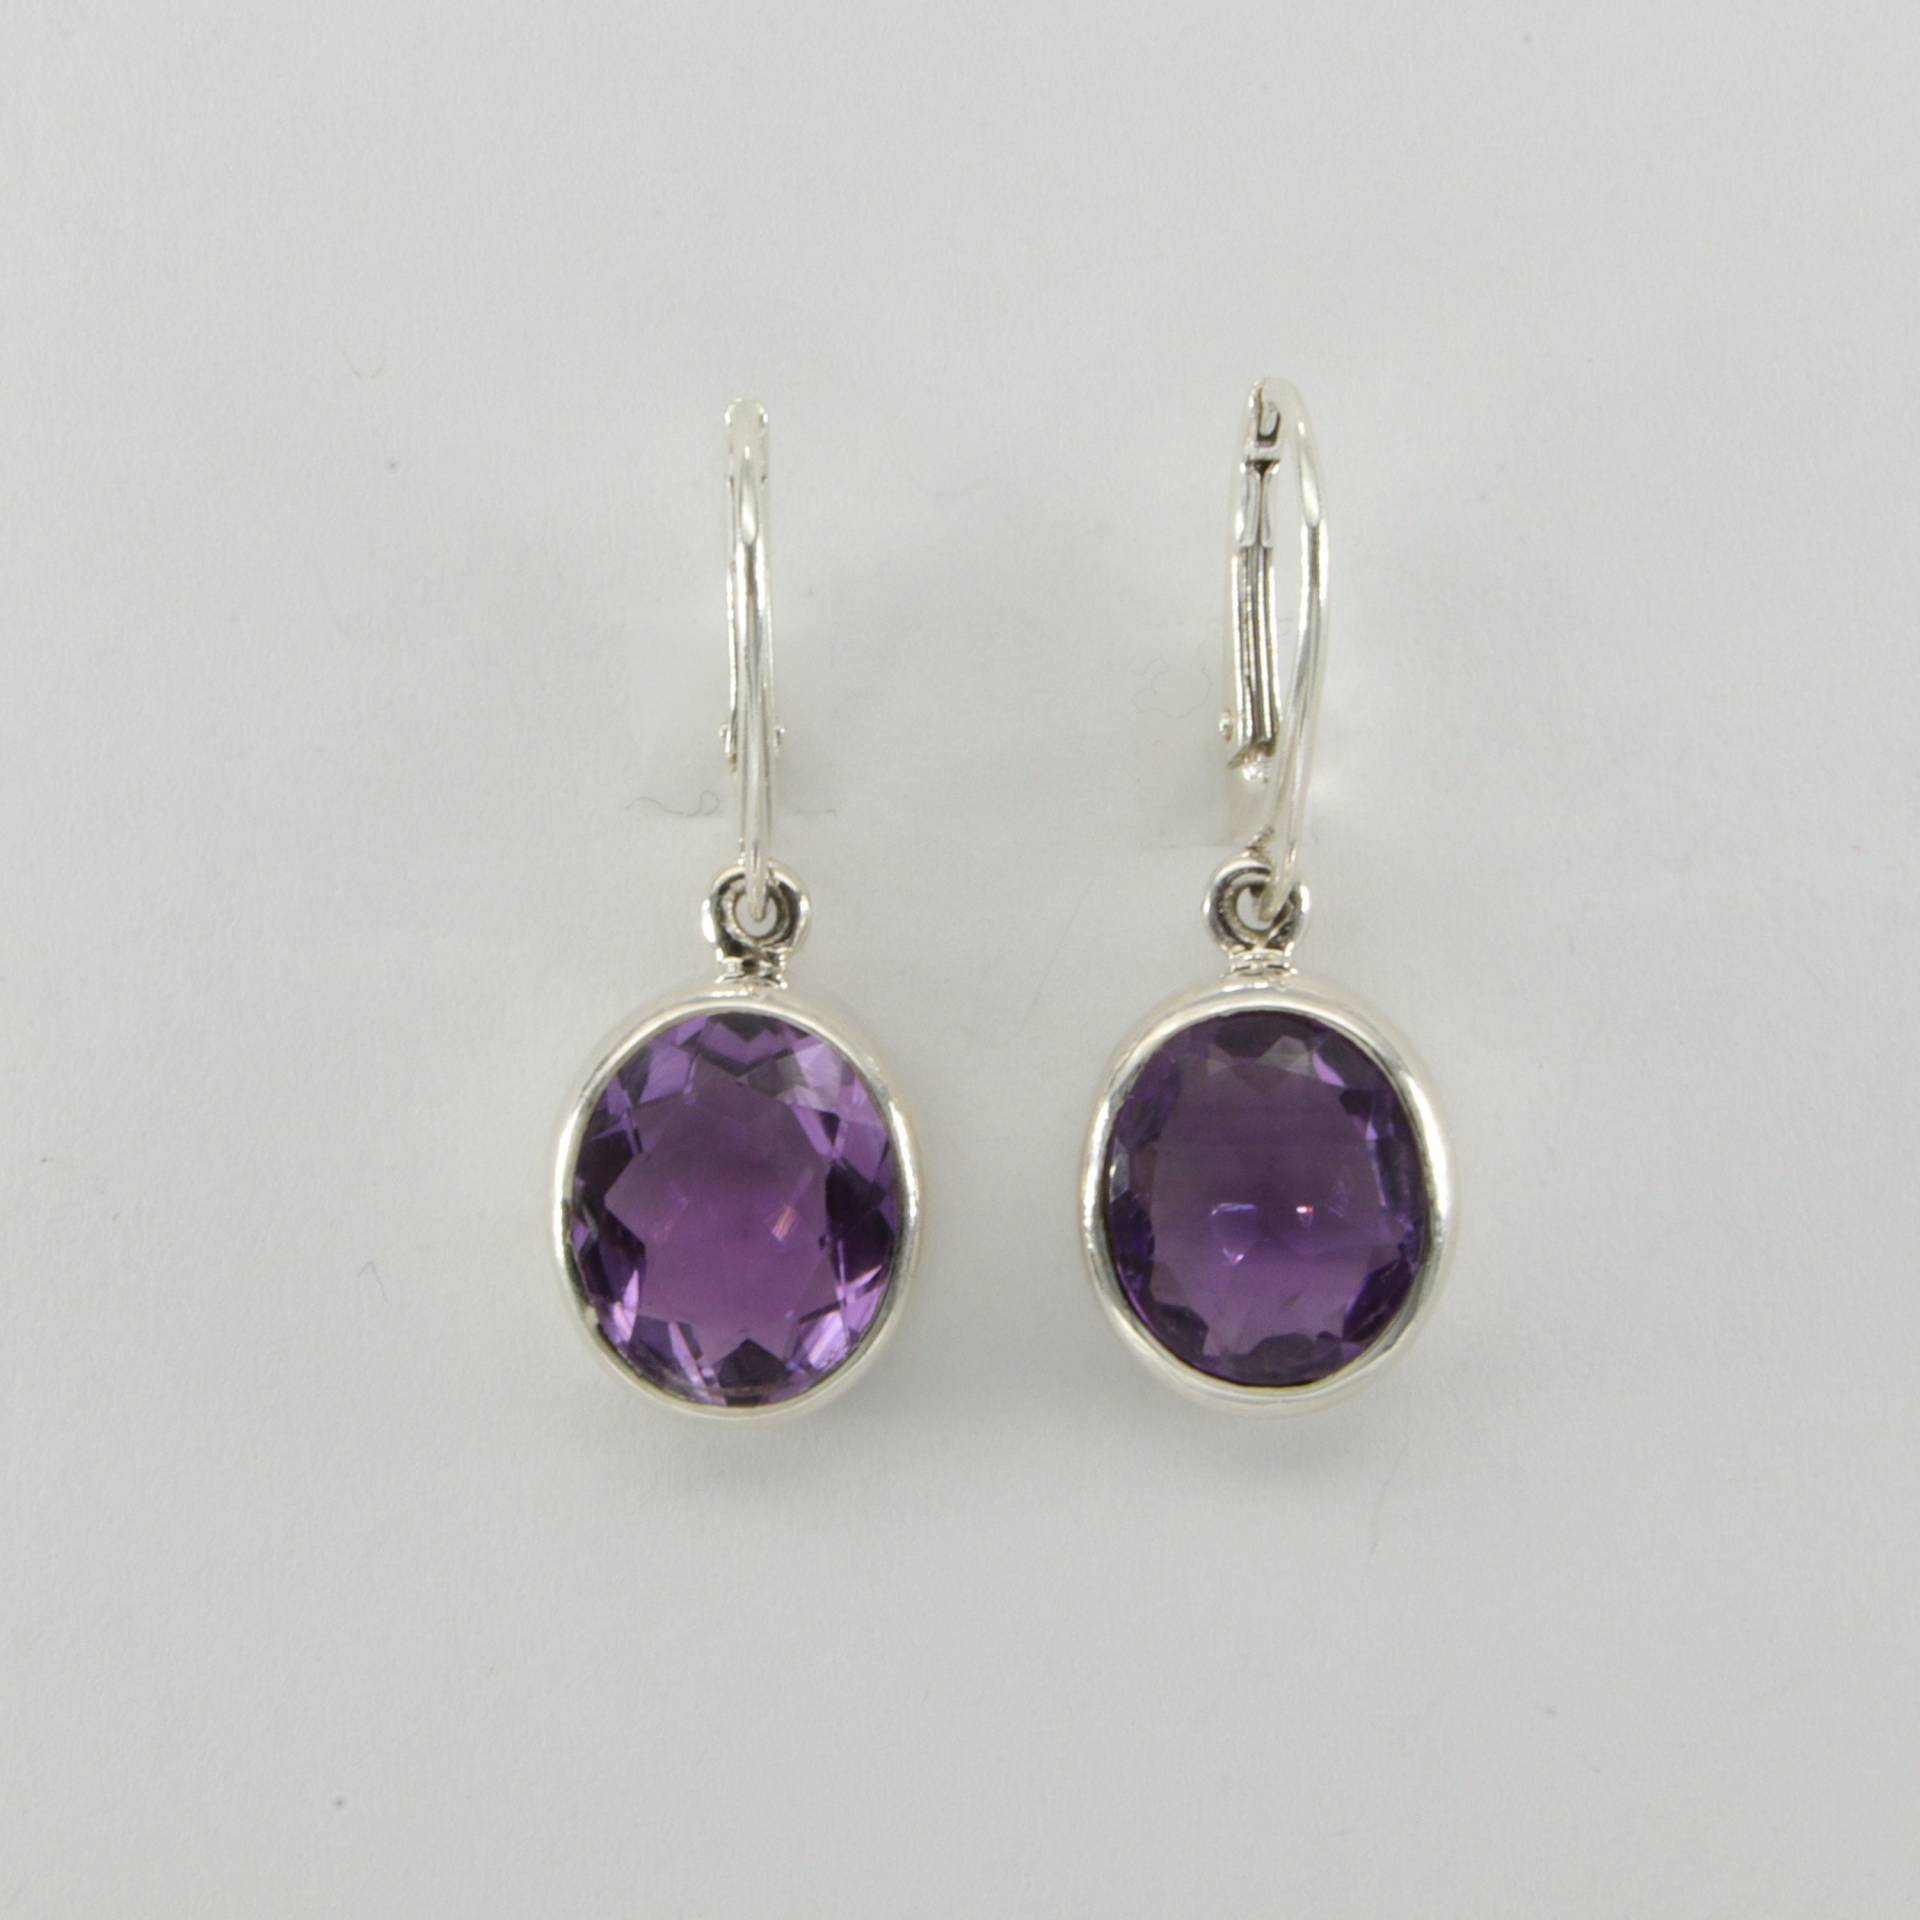 Echte Natürliche Lila/Violette Ovale Amethyst Ohrringe - 925 Sterling Silber Mit Klappbrisuren von StoneAndRox